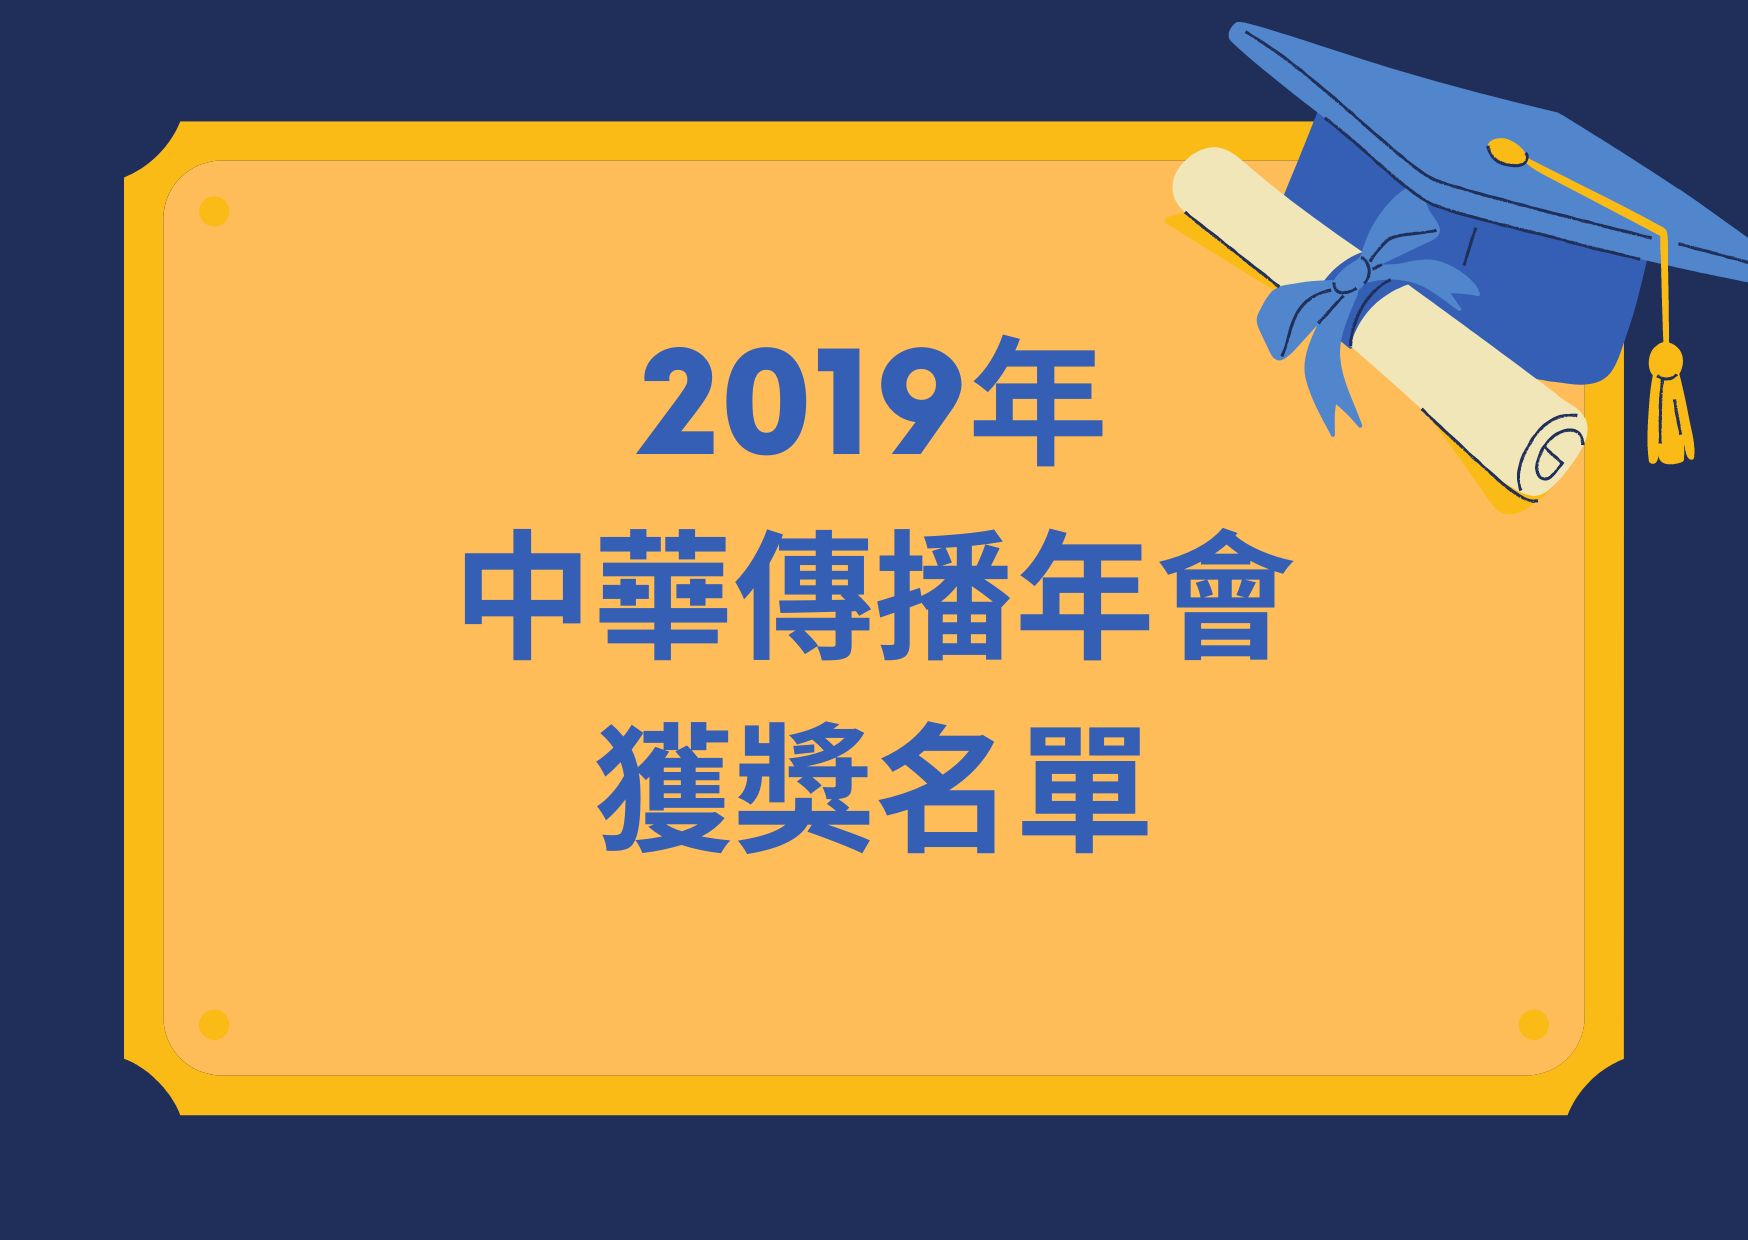 2019年中華傳播年會獲獎名單